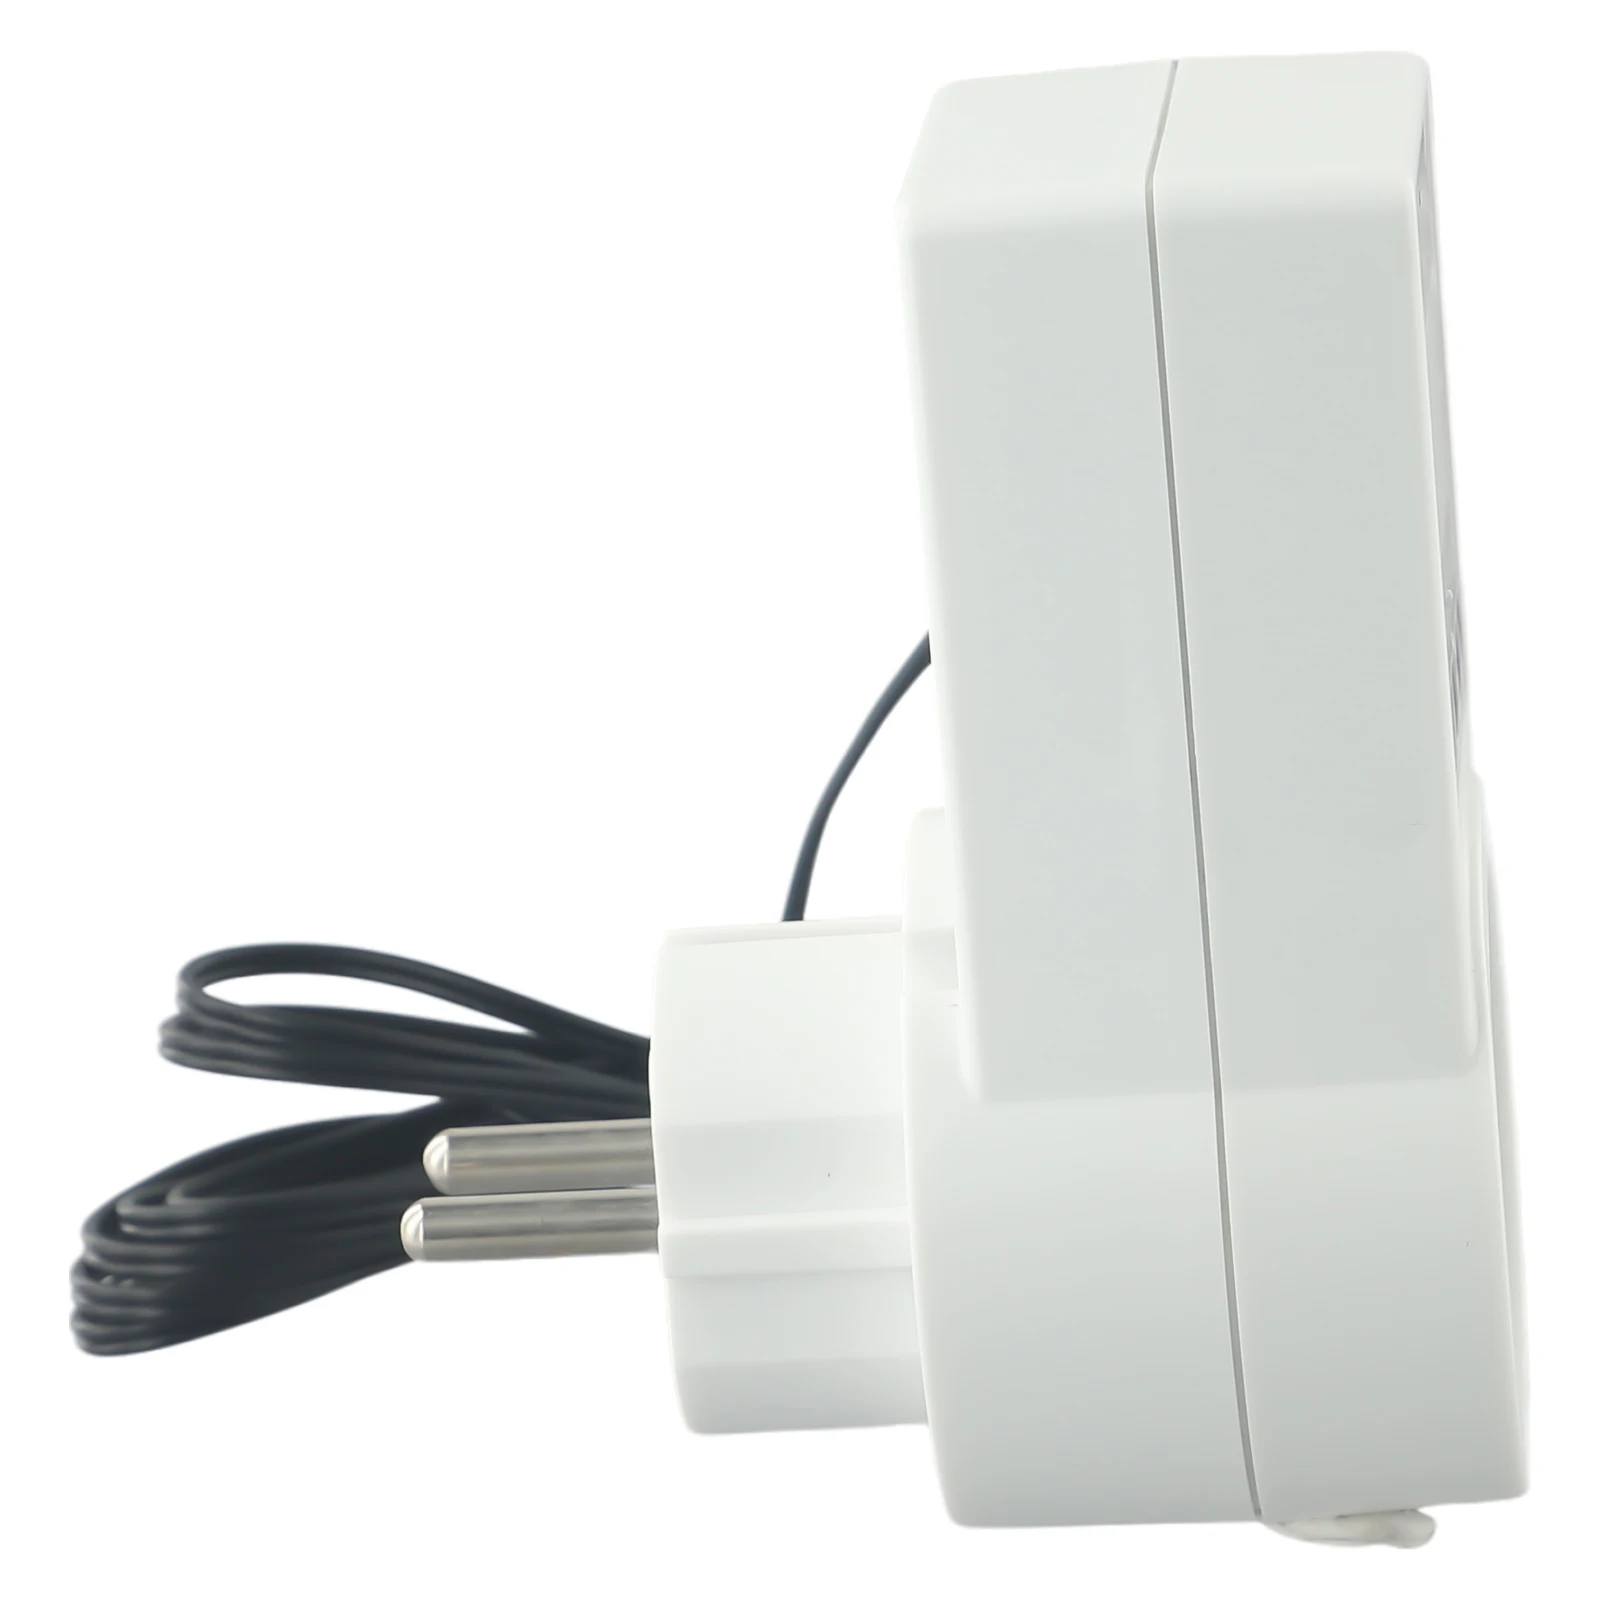 Interruptor de Temperatura Termostato Soquetes, Digital EU Plug, 100-240V AC, Aquecimento Estufa, Display LCD, Controlador de Temperatura